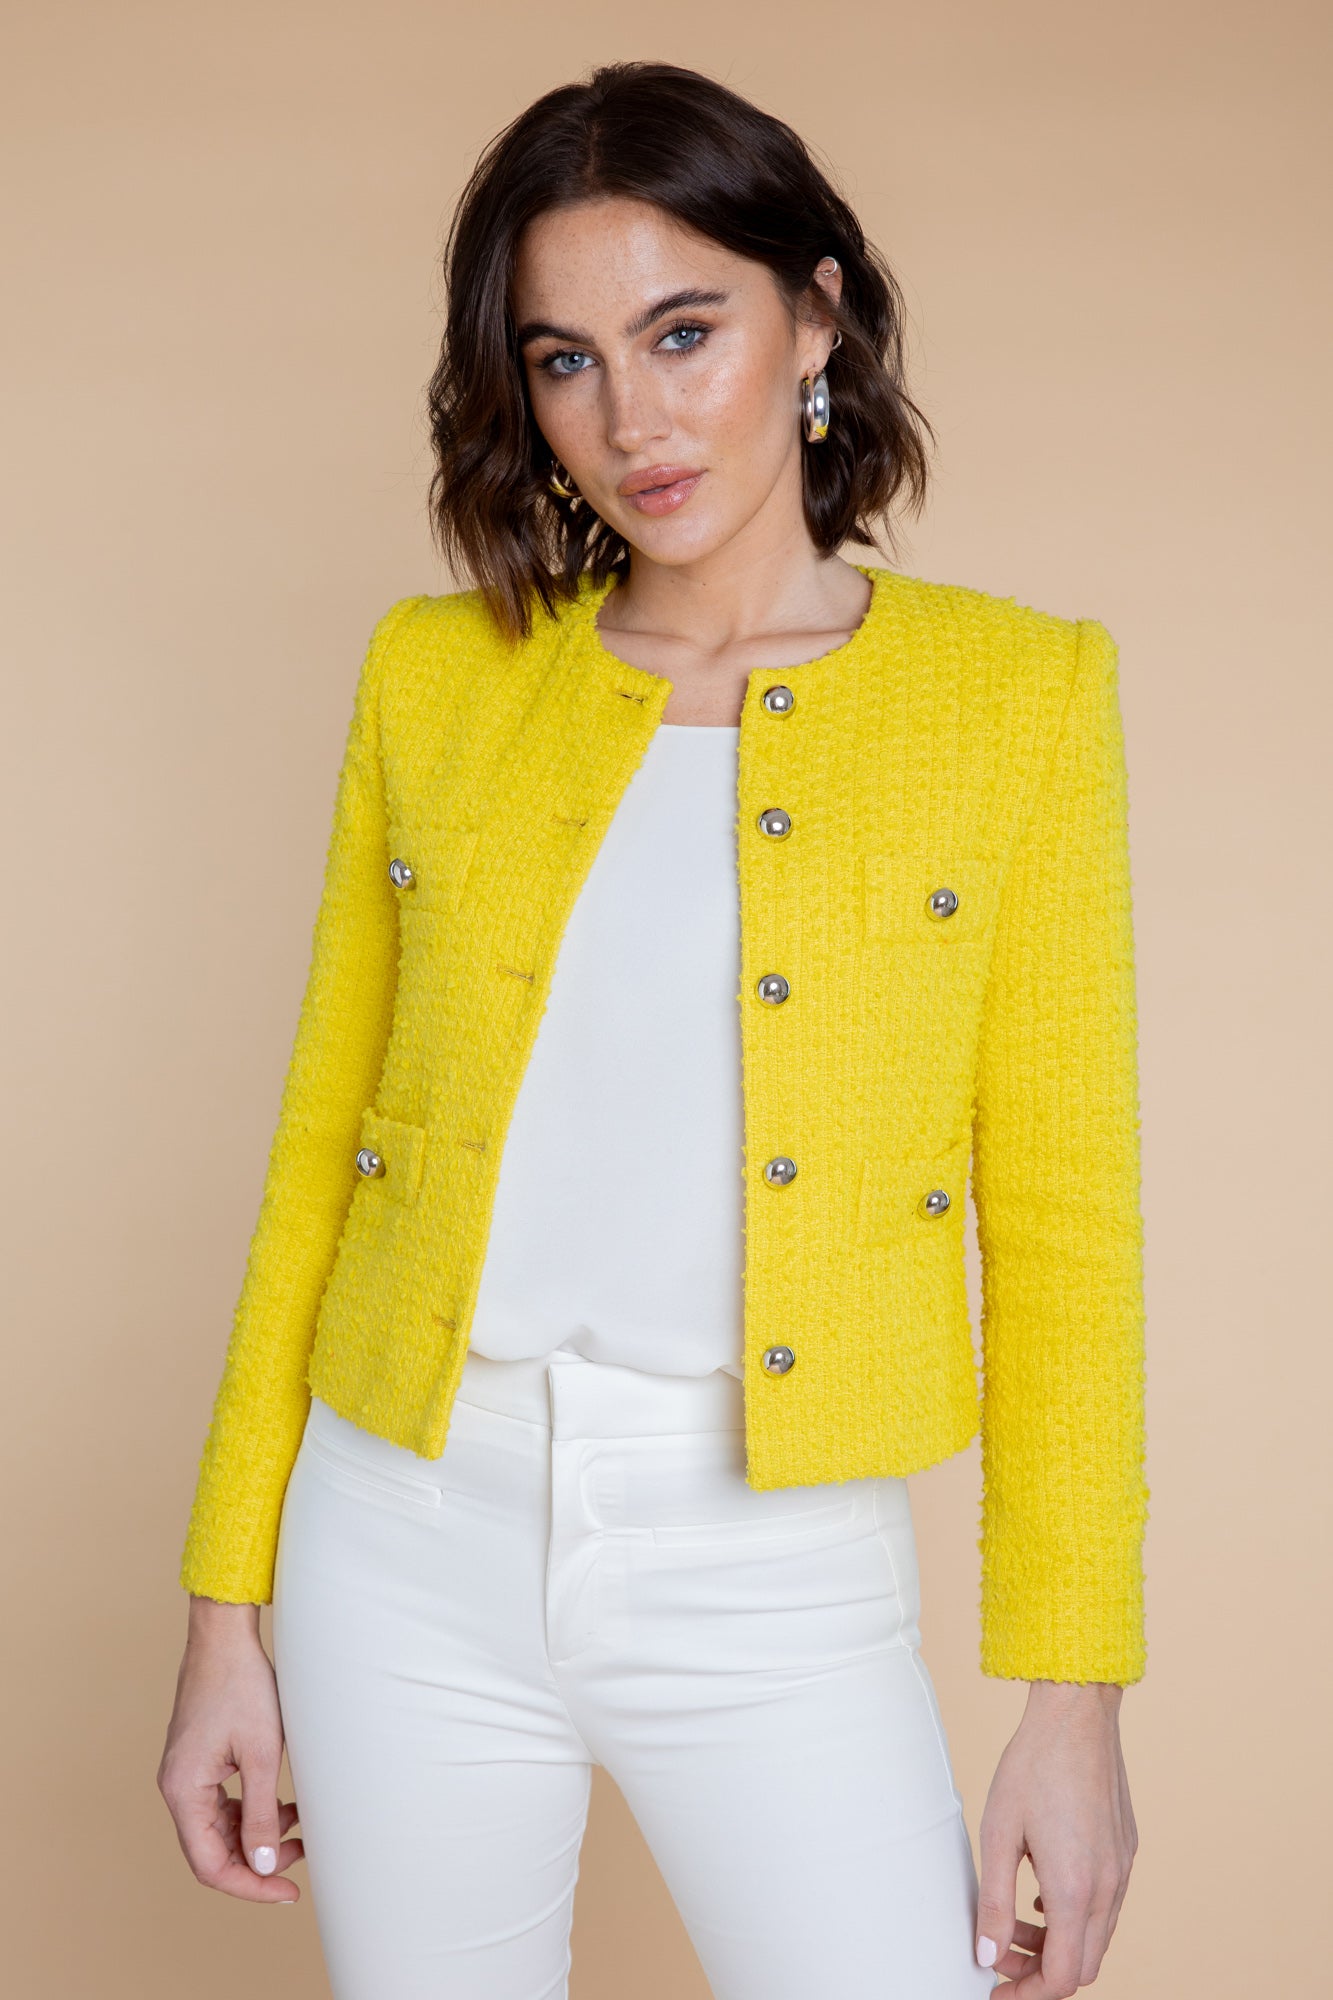 Tweedheart Jacke in Gelb mit Weiß kombiniert